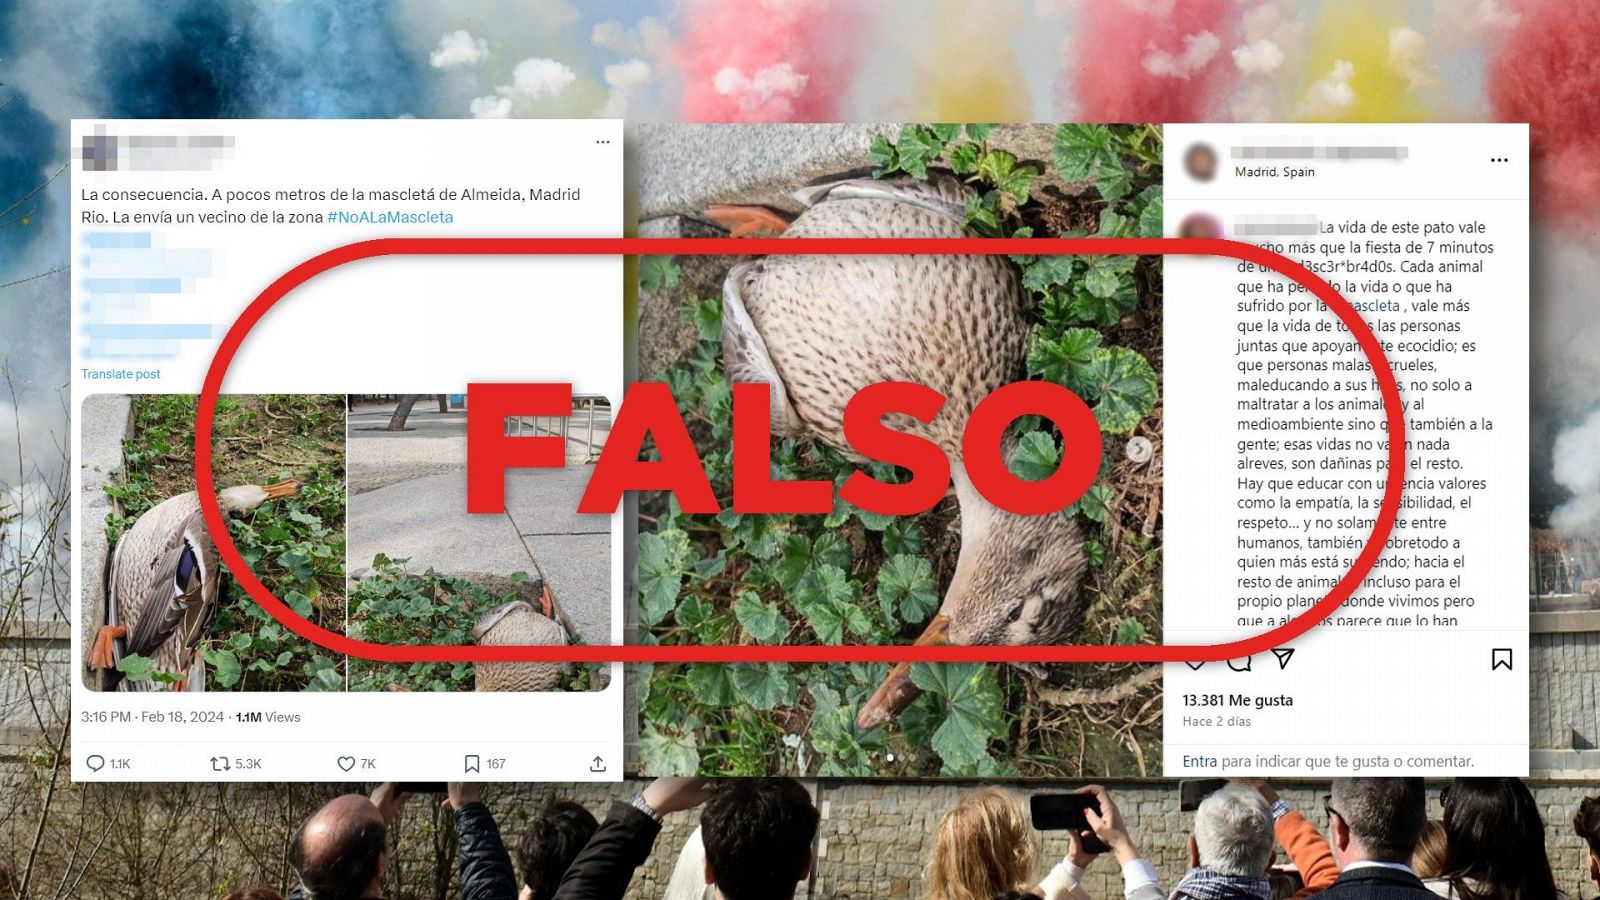 Este pato no ha muerto por la mascletá en Madrid, con el sello Falso en rojo de VerificaRTVE